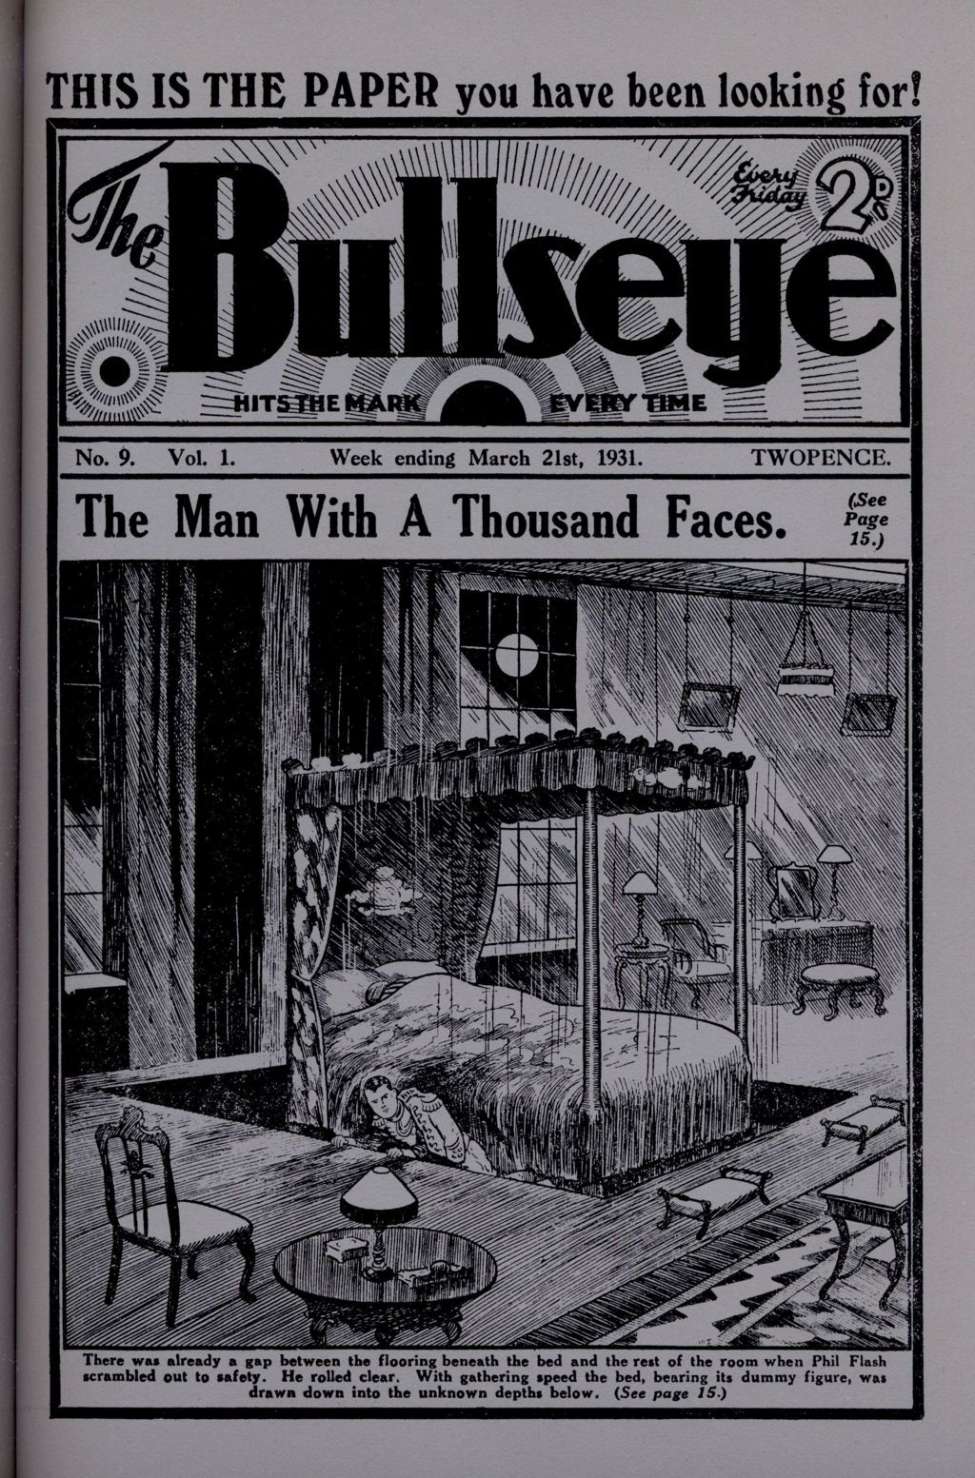 Book Cover For The Bullseye v1 9 - Mortimer Hood - The Scanlan Mystery